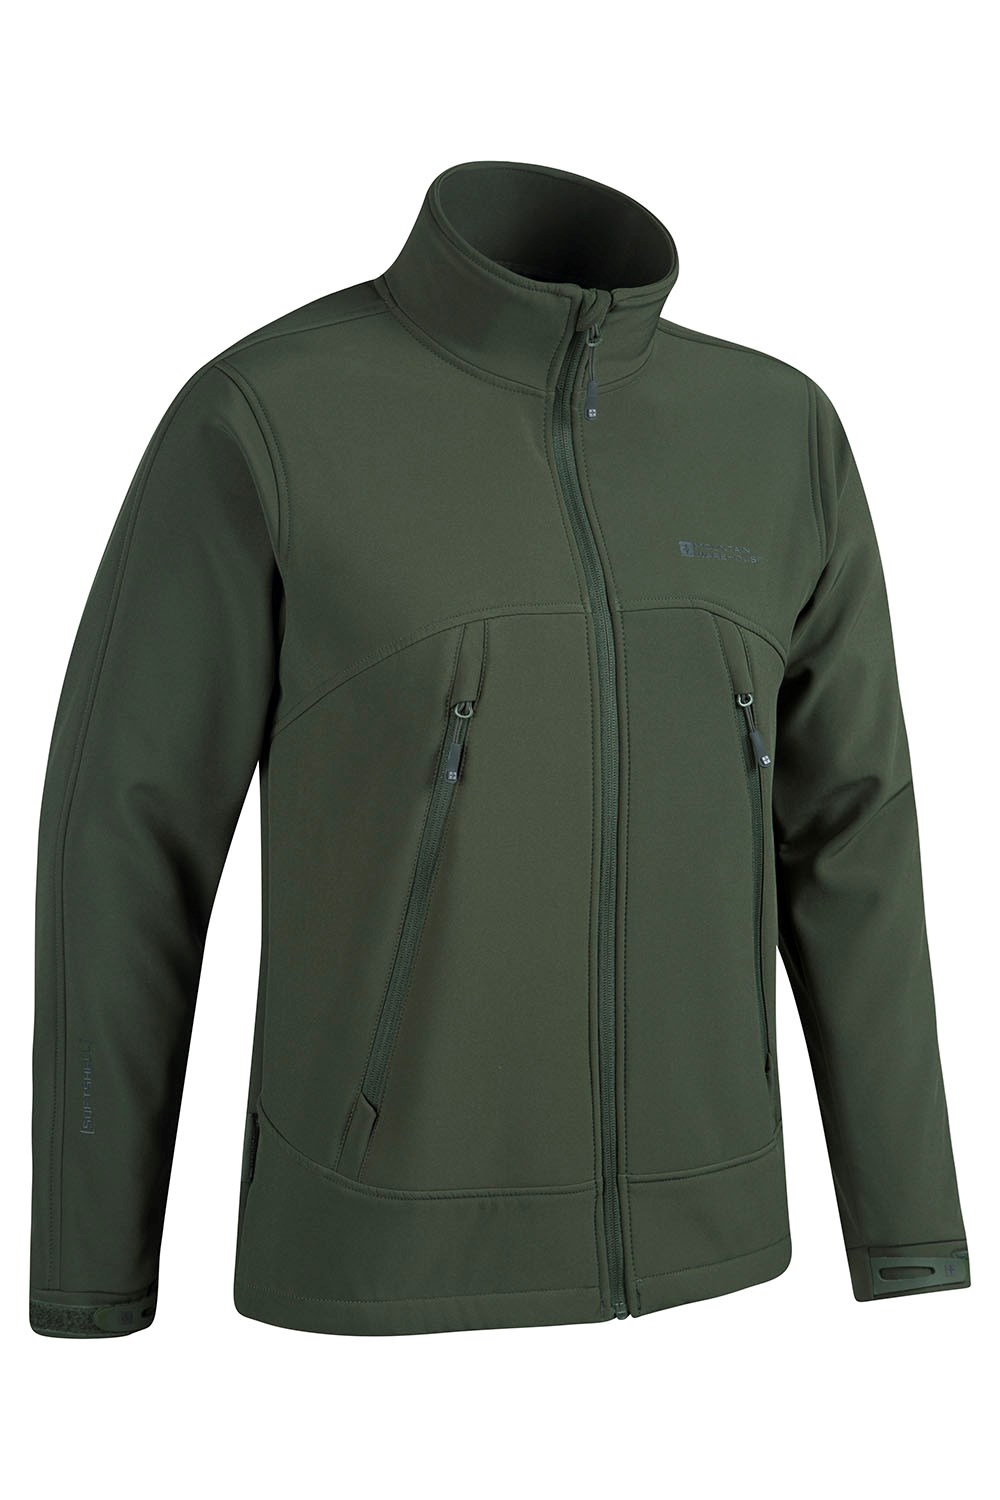 Mountain Warehouse Napier Mens Softshell Jacket | eBay